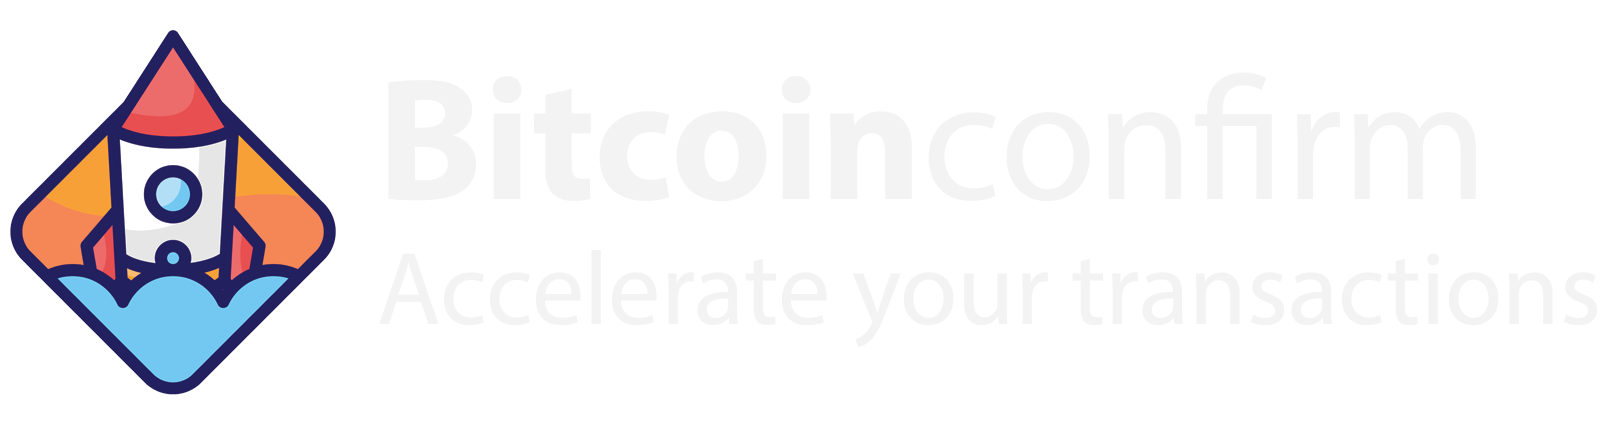 Bitcoin Confirm